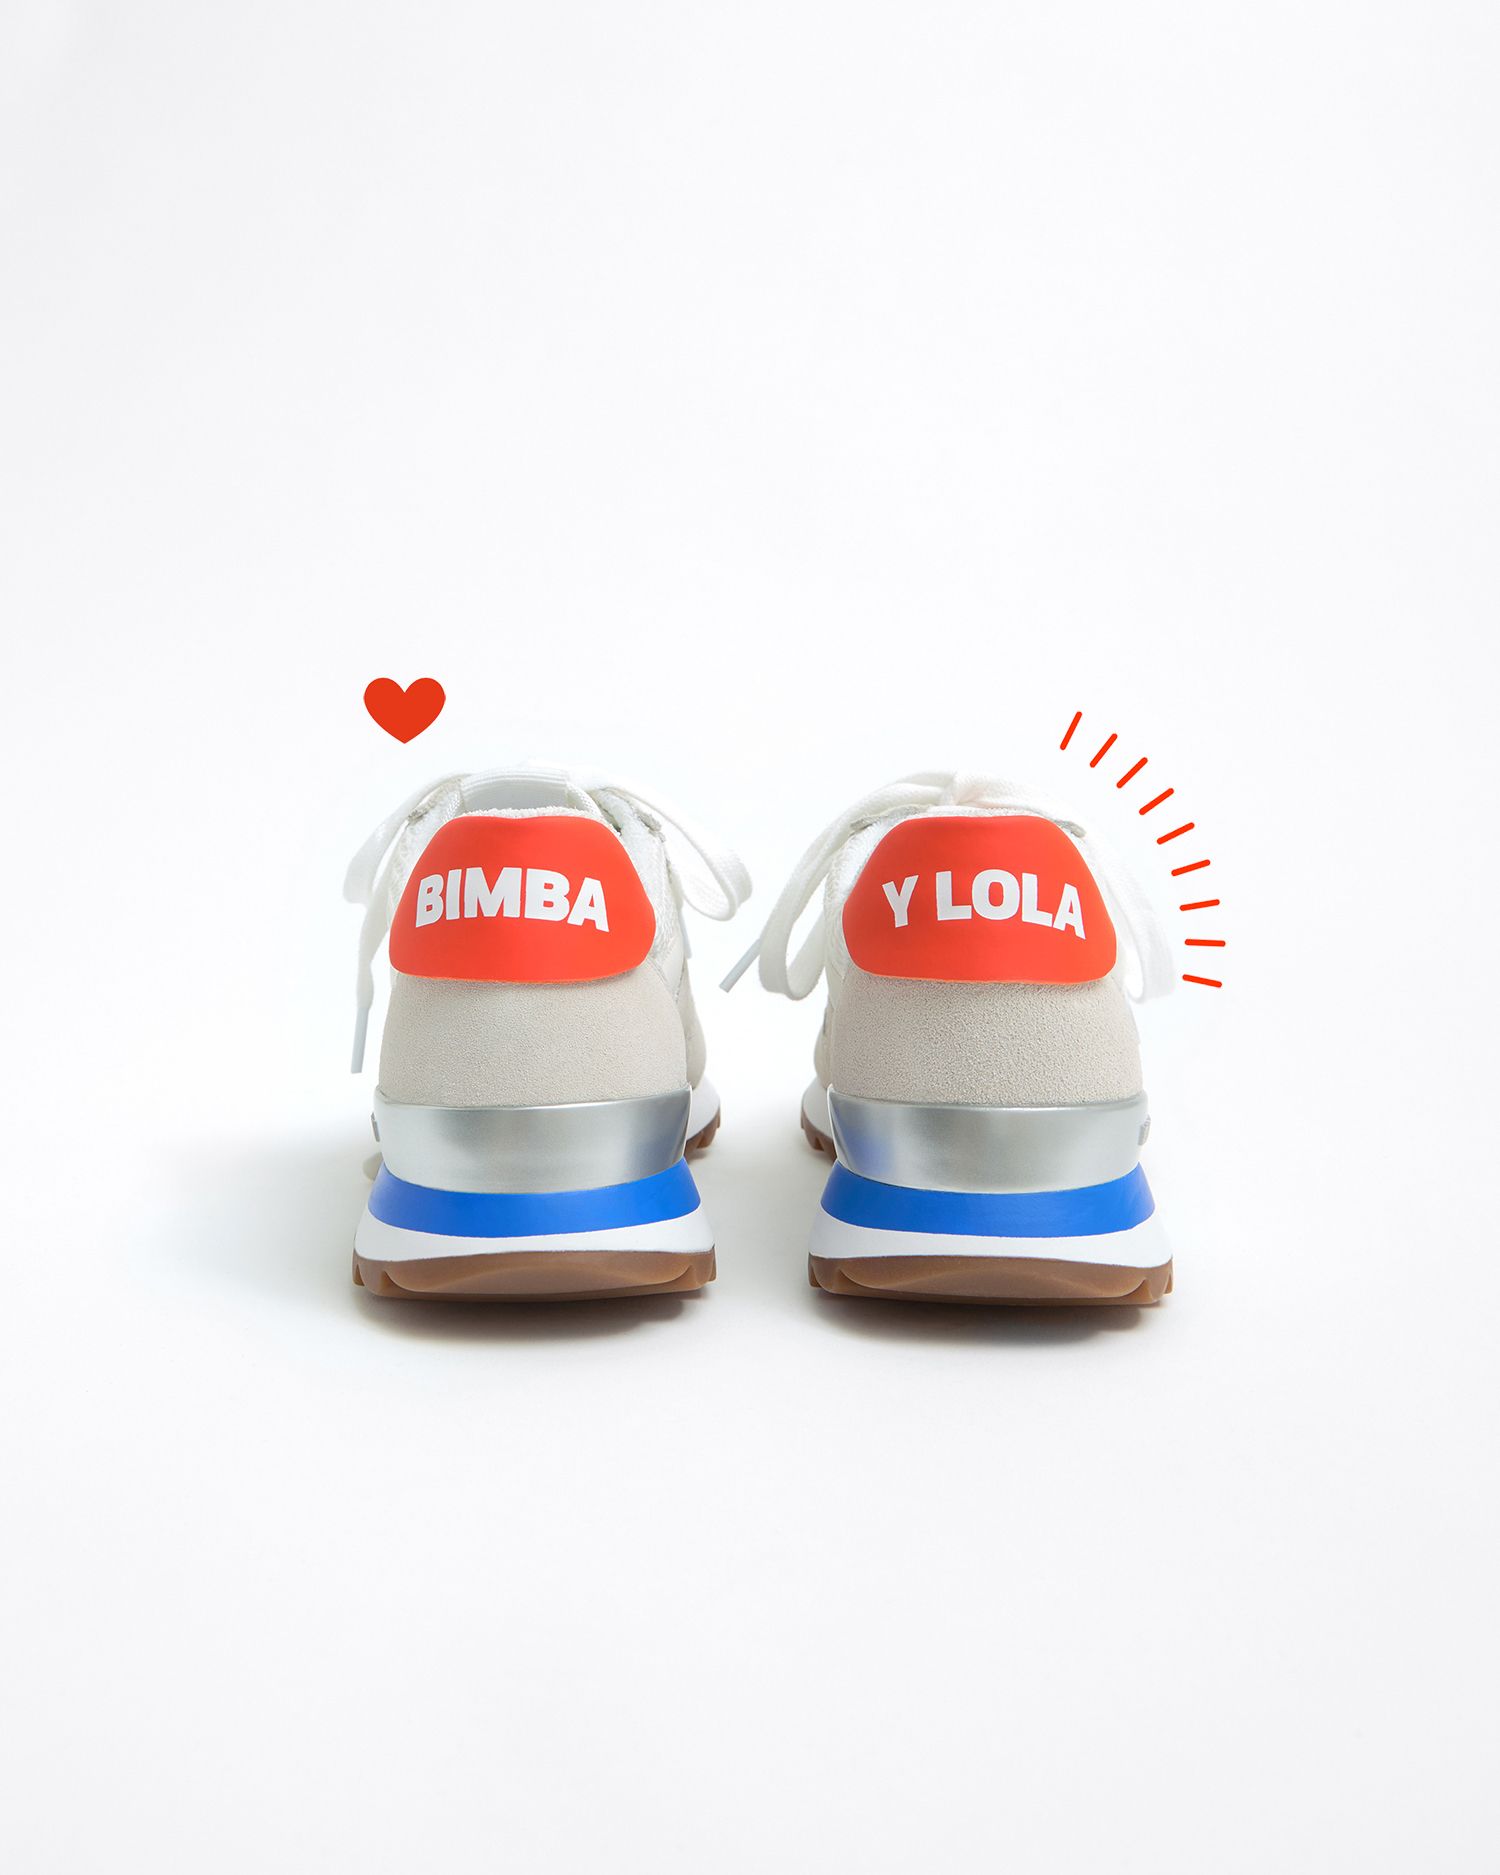 Bimba y Lola rebaja zapatillas más